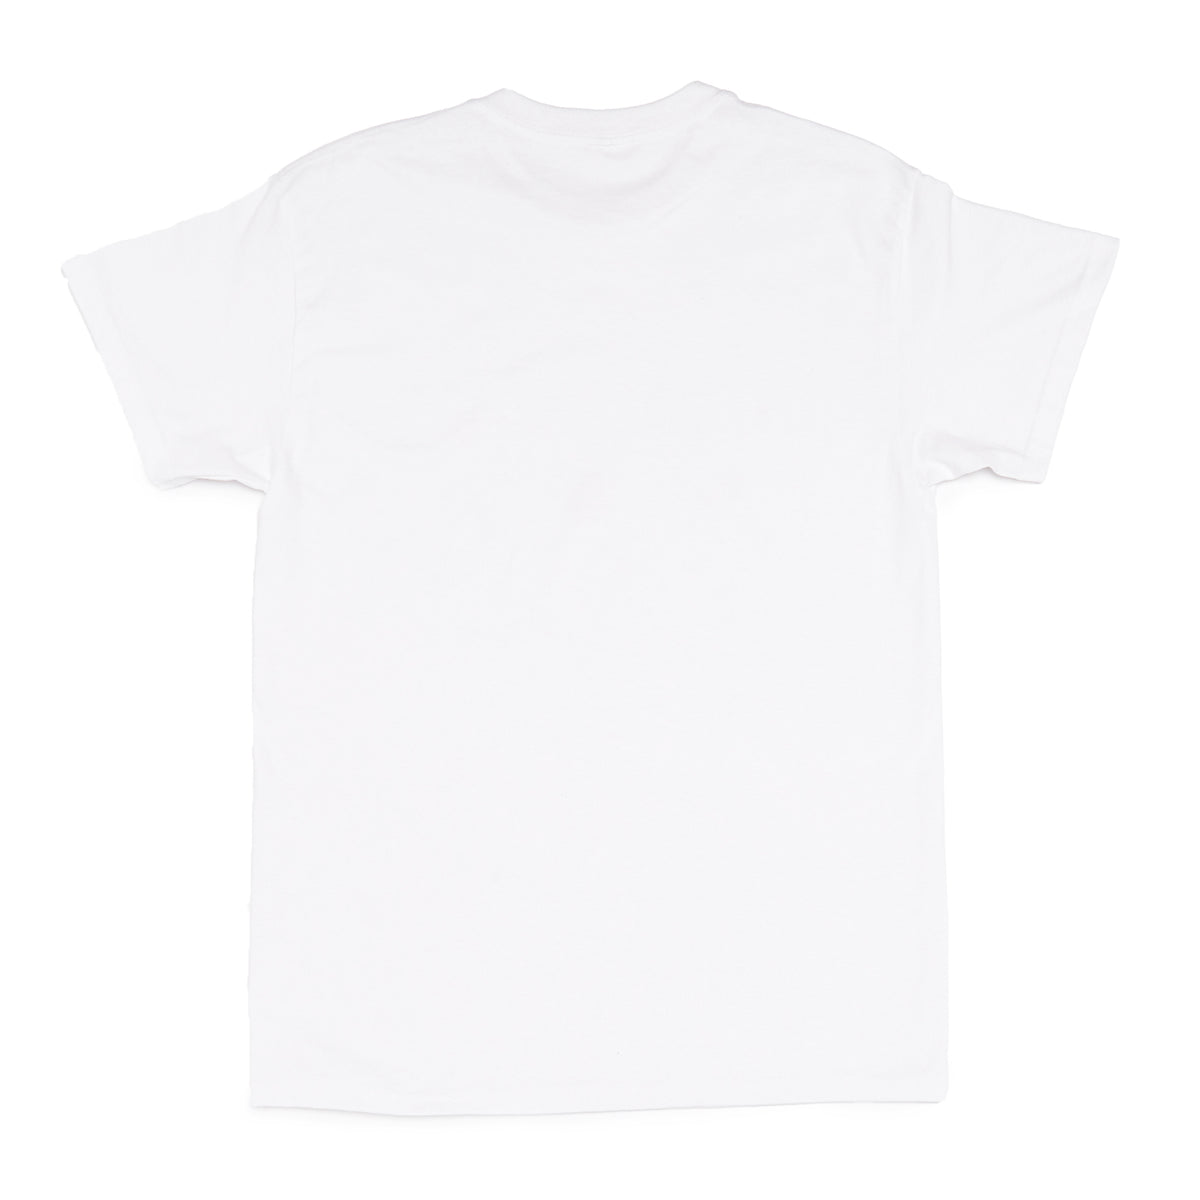 Cinnamoroll T-shirt (Roblox), Free t shirt design, Hello kitty t shirt,  Free tshirt in 2023